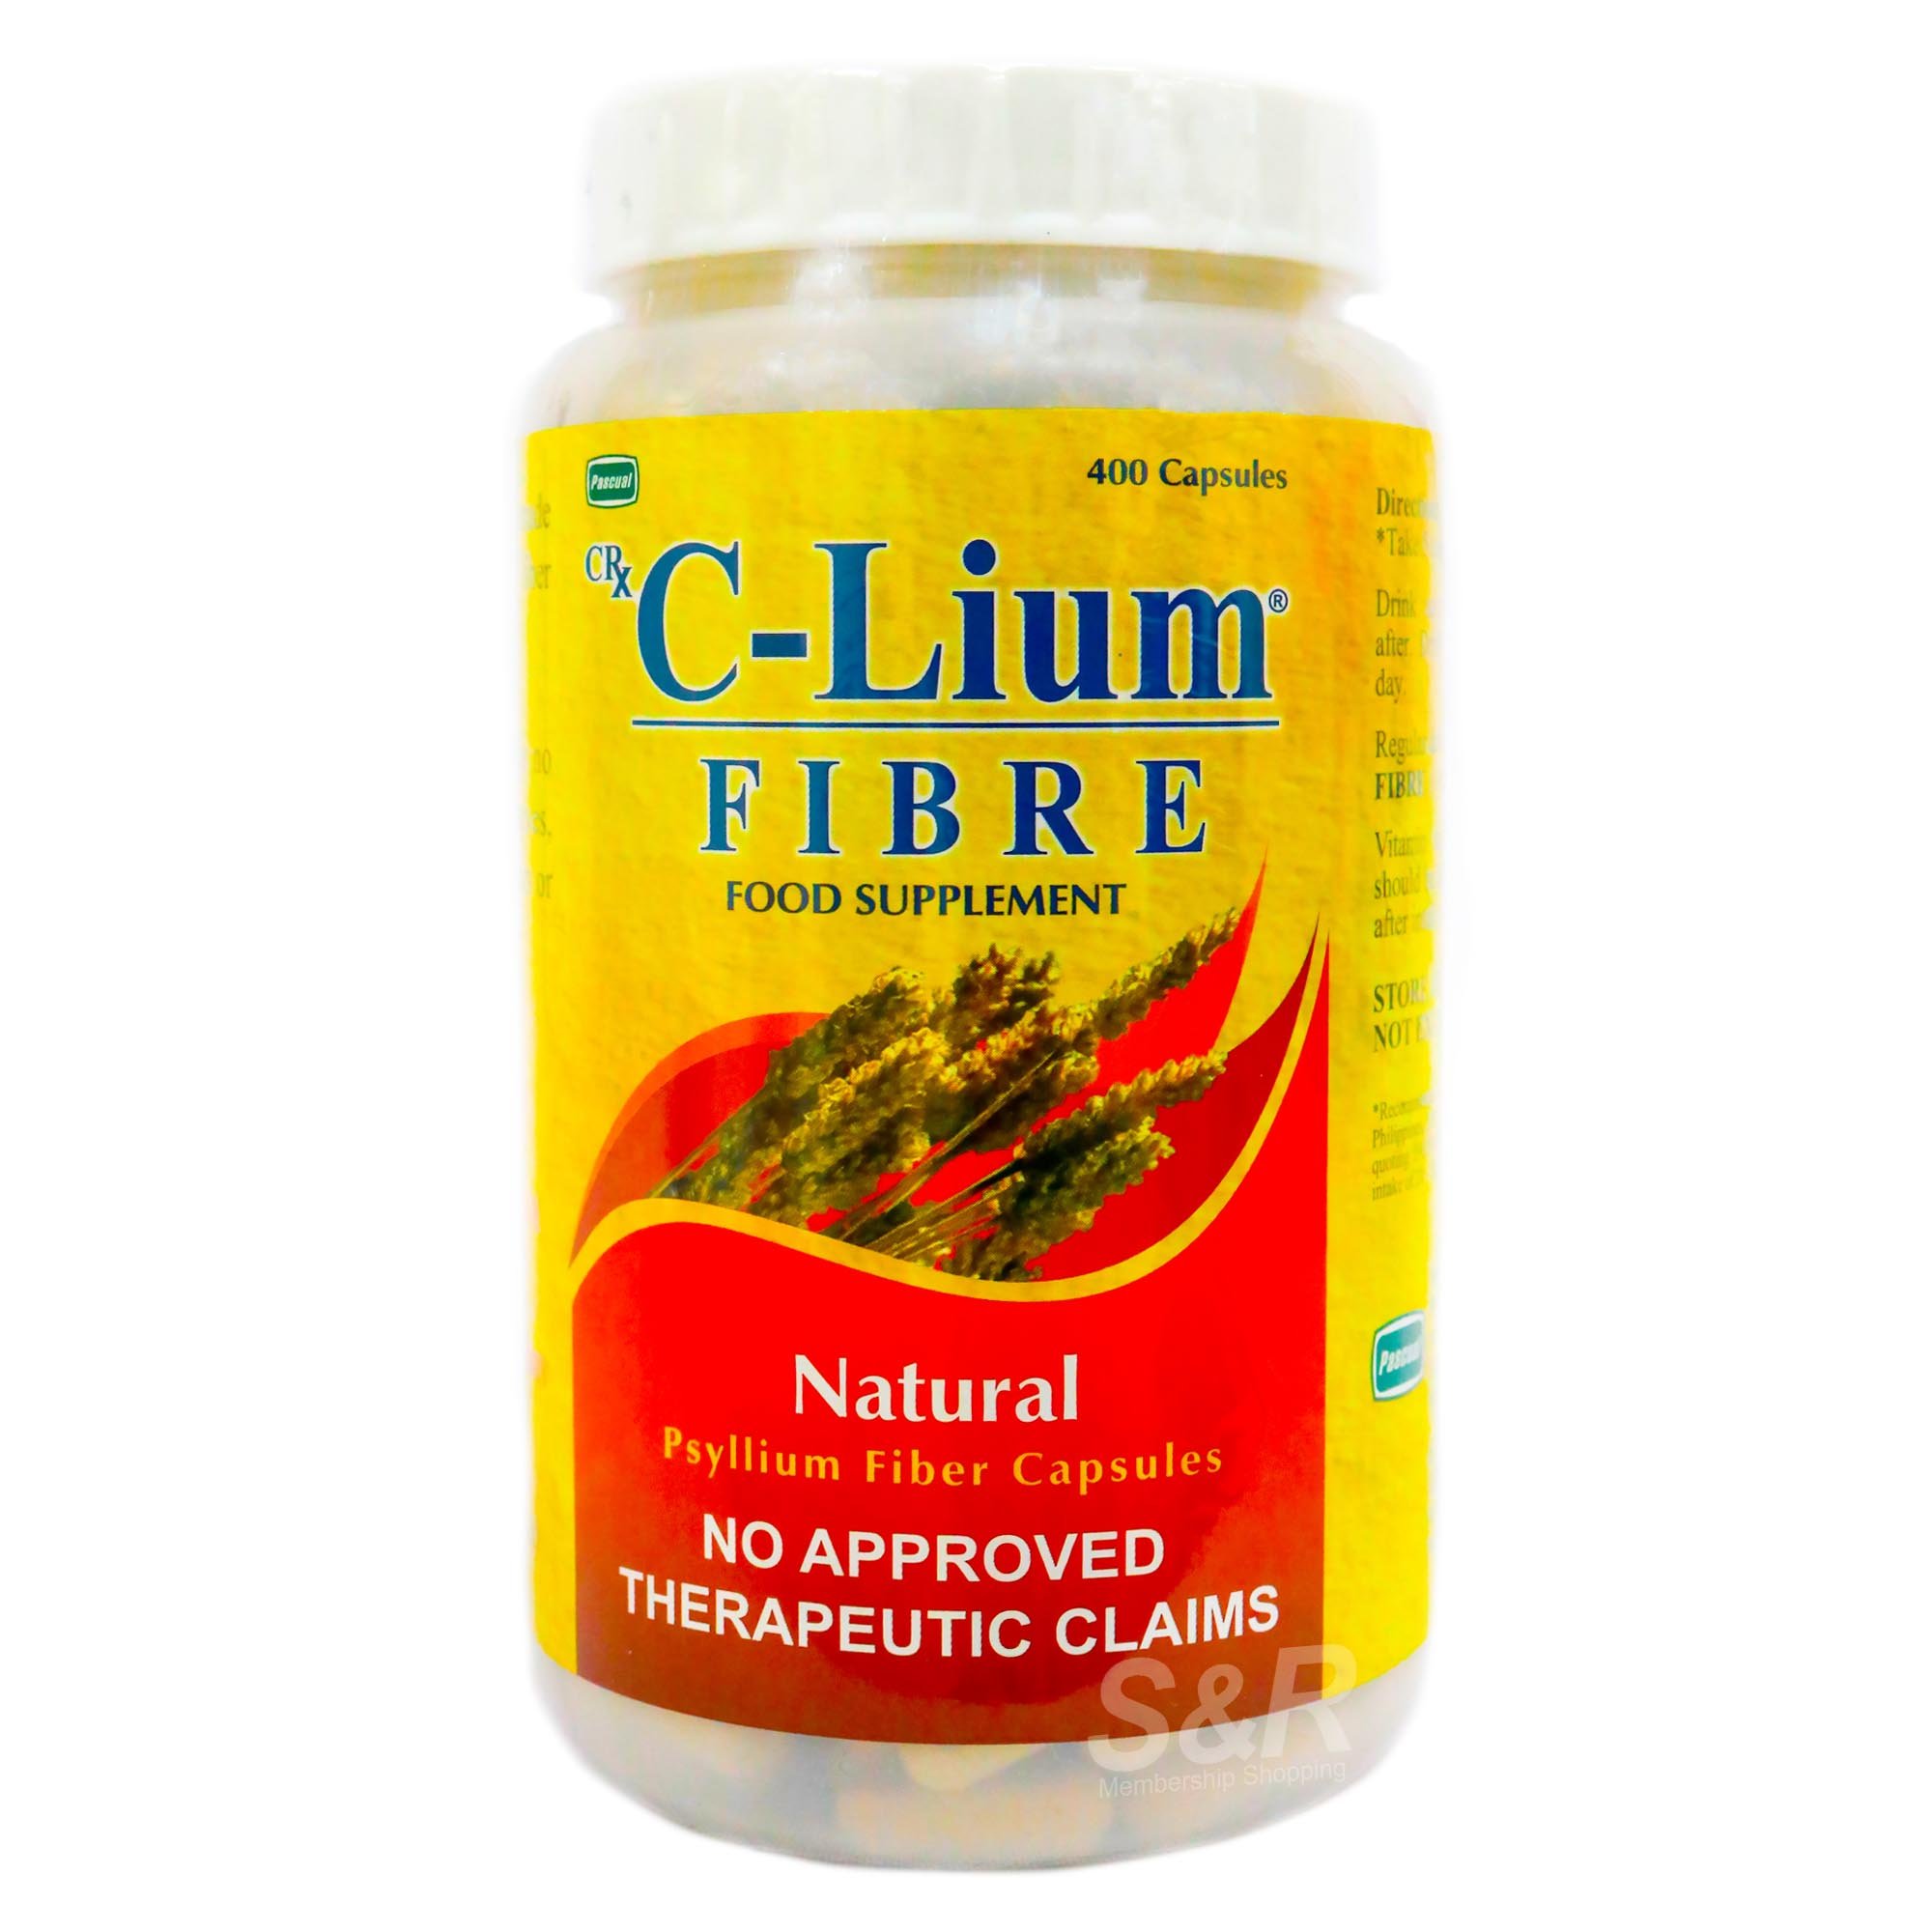 C-Lium Fibre Capsule Fiber Supplement